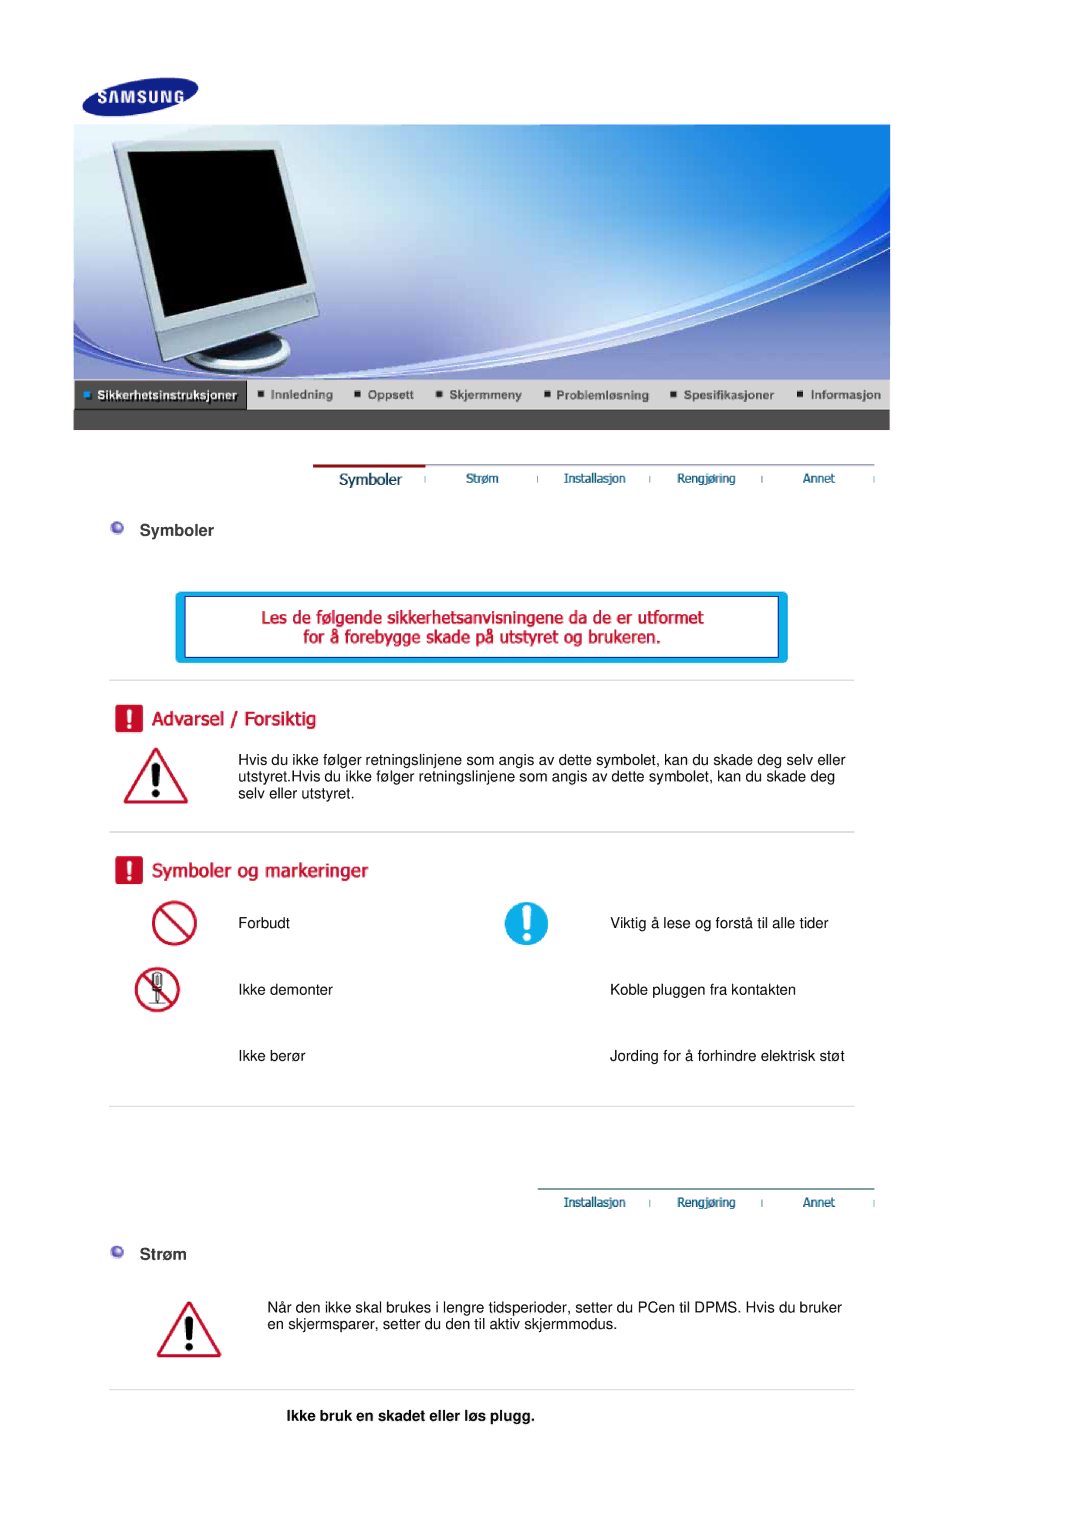 Samsung LS19DOASS/EDC, LS17DOASS/EDC manual Symboler, Strøm, Ikke bruk en skadet eller løs plugg 